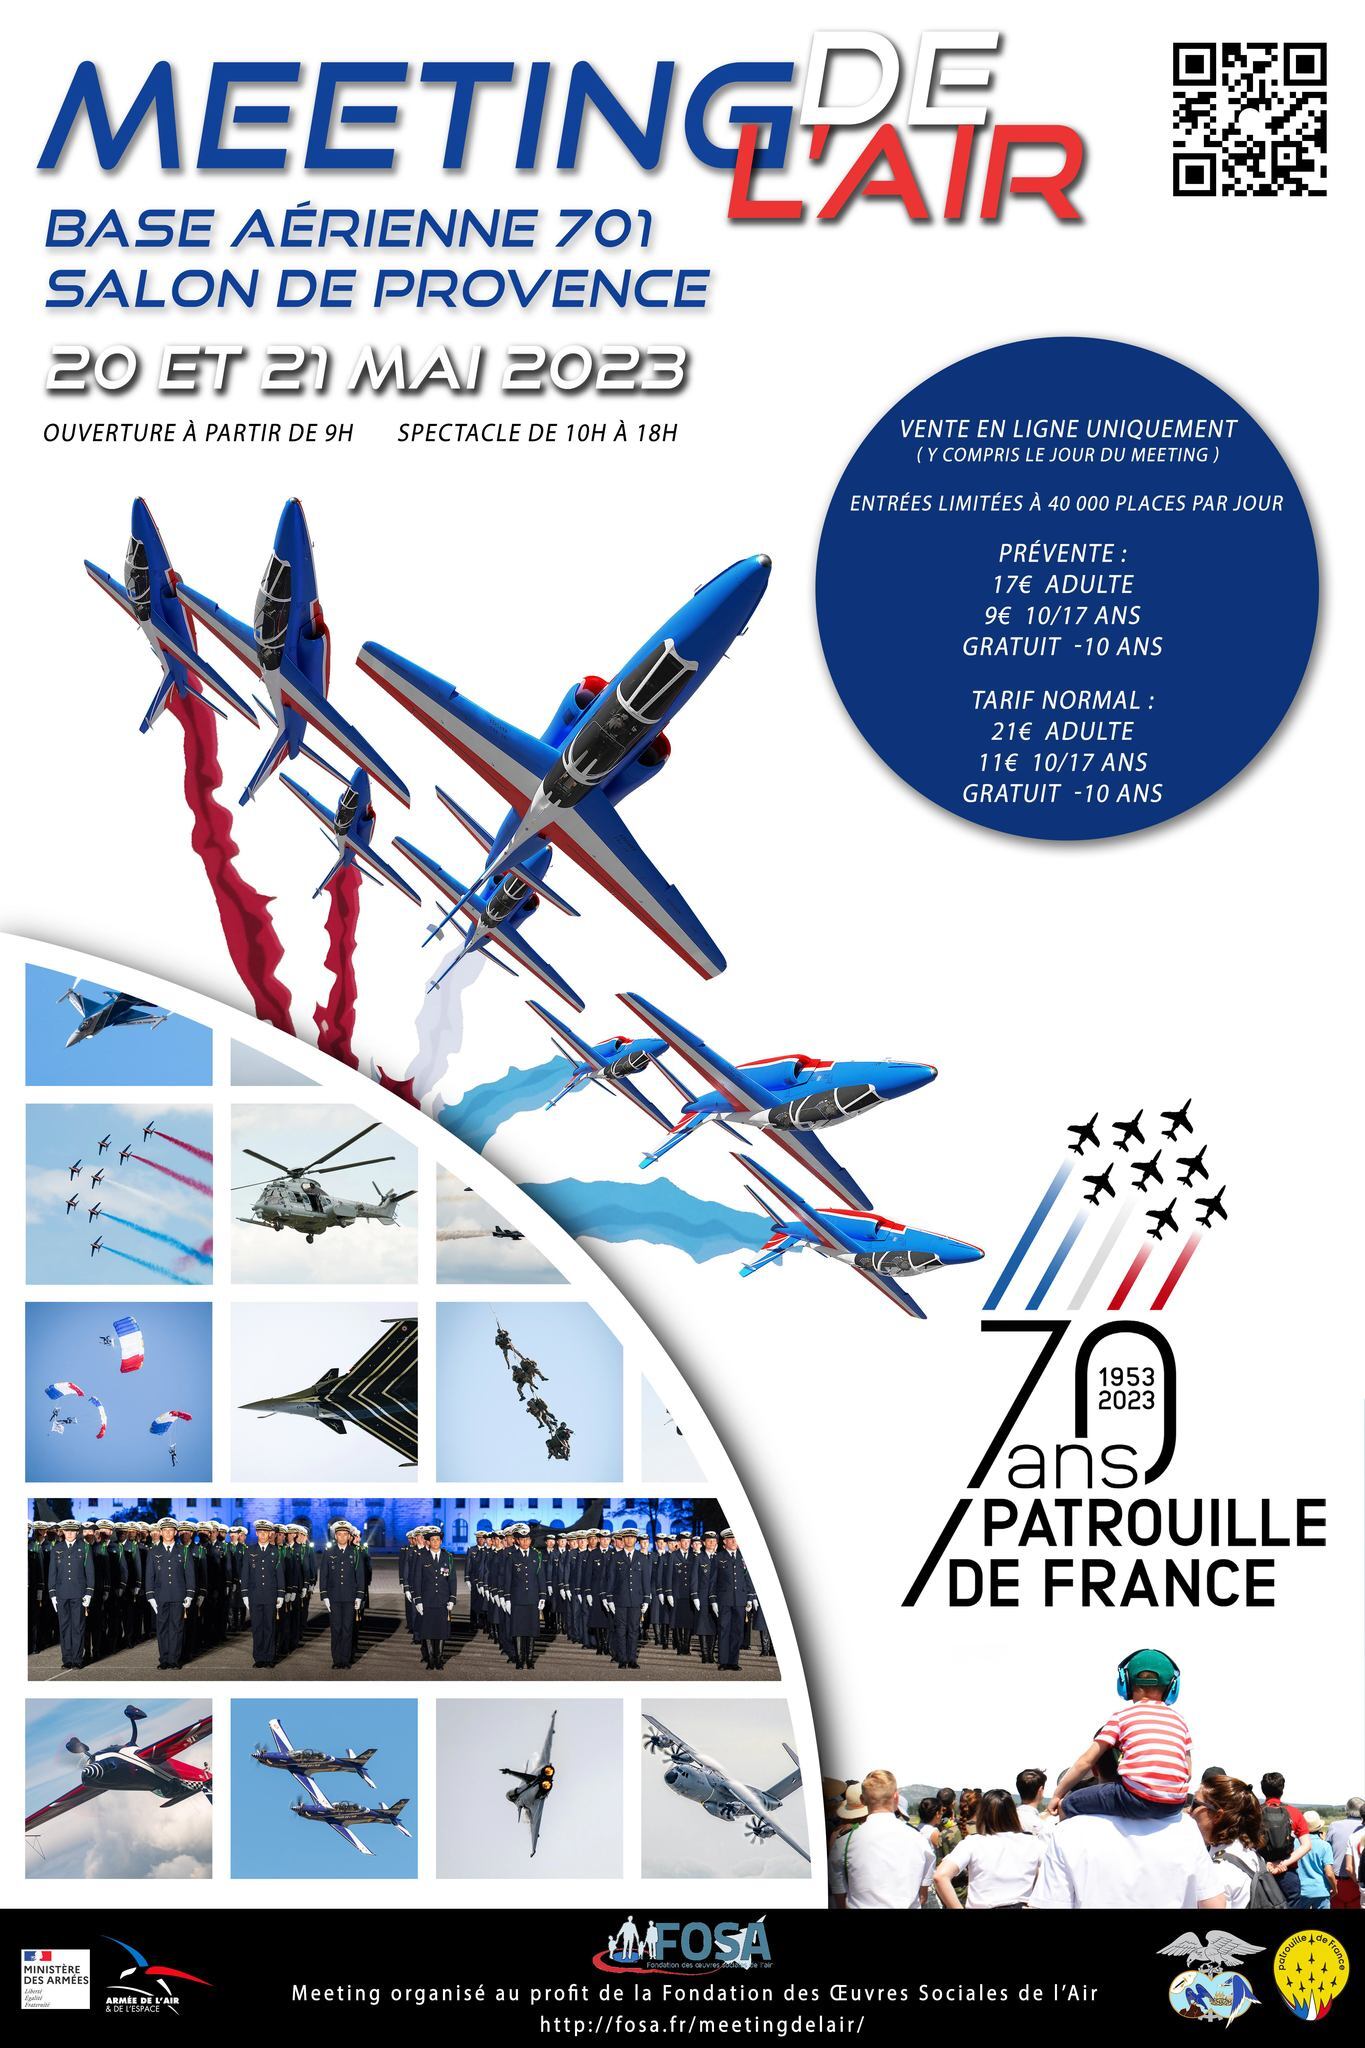 Meeting de l'Air BA-701 Salon de Provence les 20 & 21 mai 2023 97i7